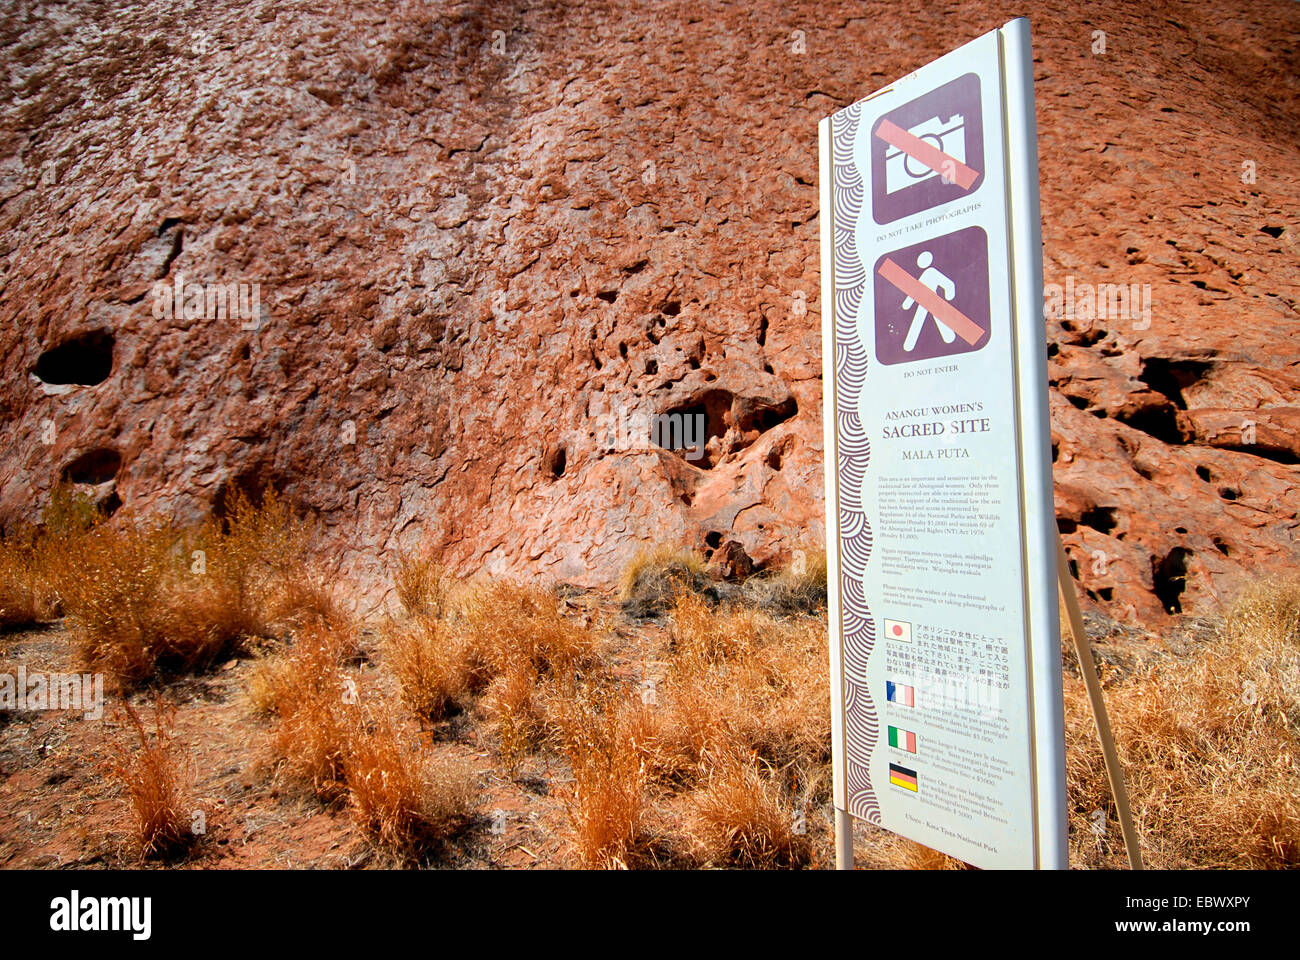 Verbotszeichen an heilige Stätte der Aborigines, Australien, Uluru-Kata Tjuta National Park, Alice Springs Stockfoto